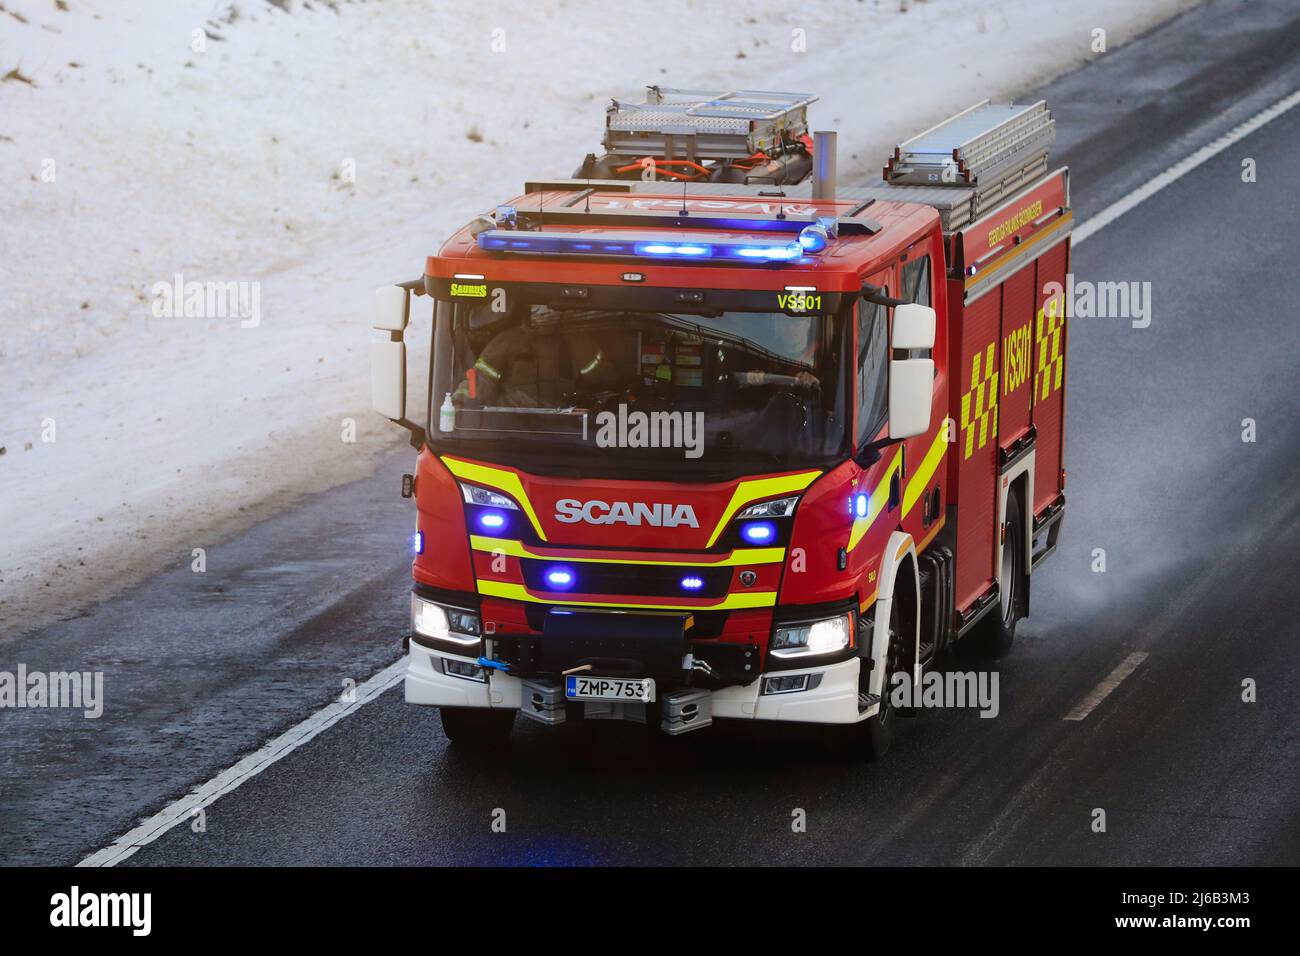 Scania P CrewCab camion antincendio a chiamata con luci blu lampeggianti, a velocità in autostrada in un giorno d'inverno. Salo, Finlandia. Dicembre 31, 2021. Foto Stock